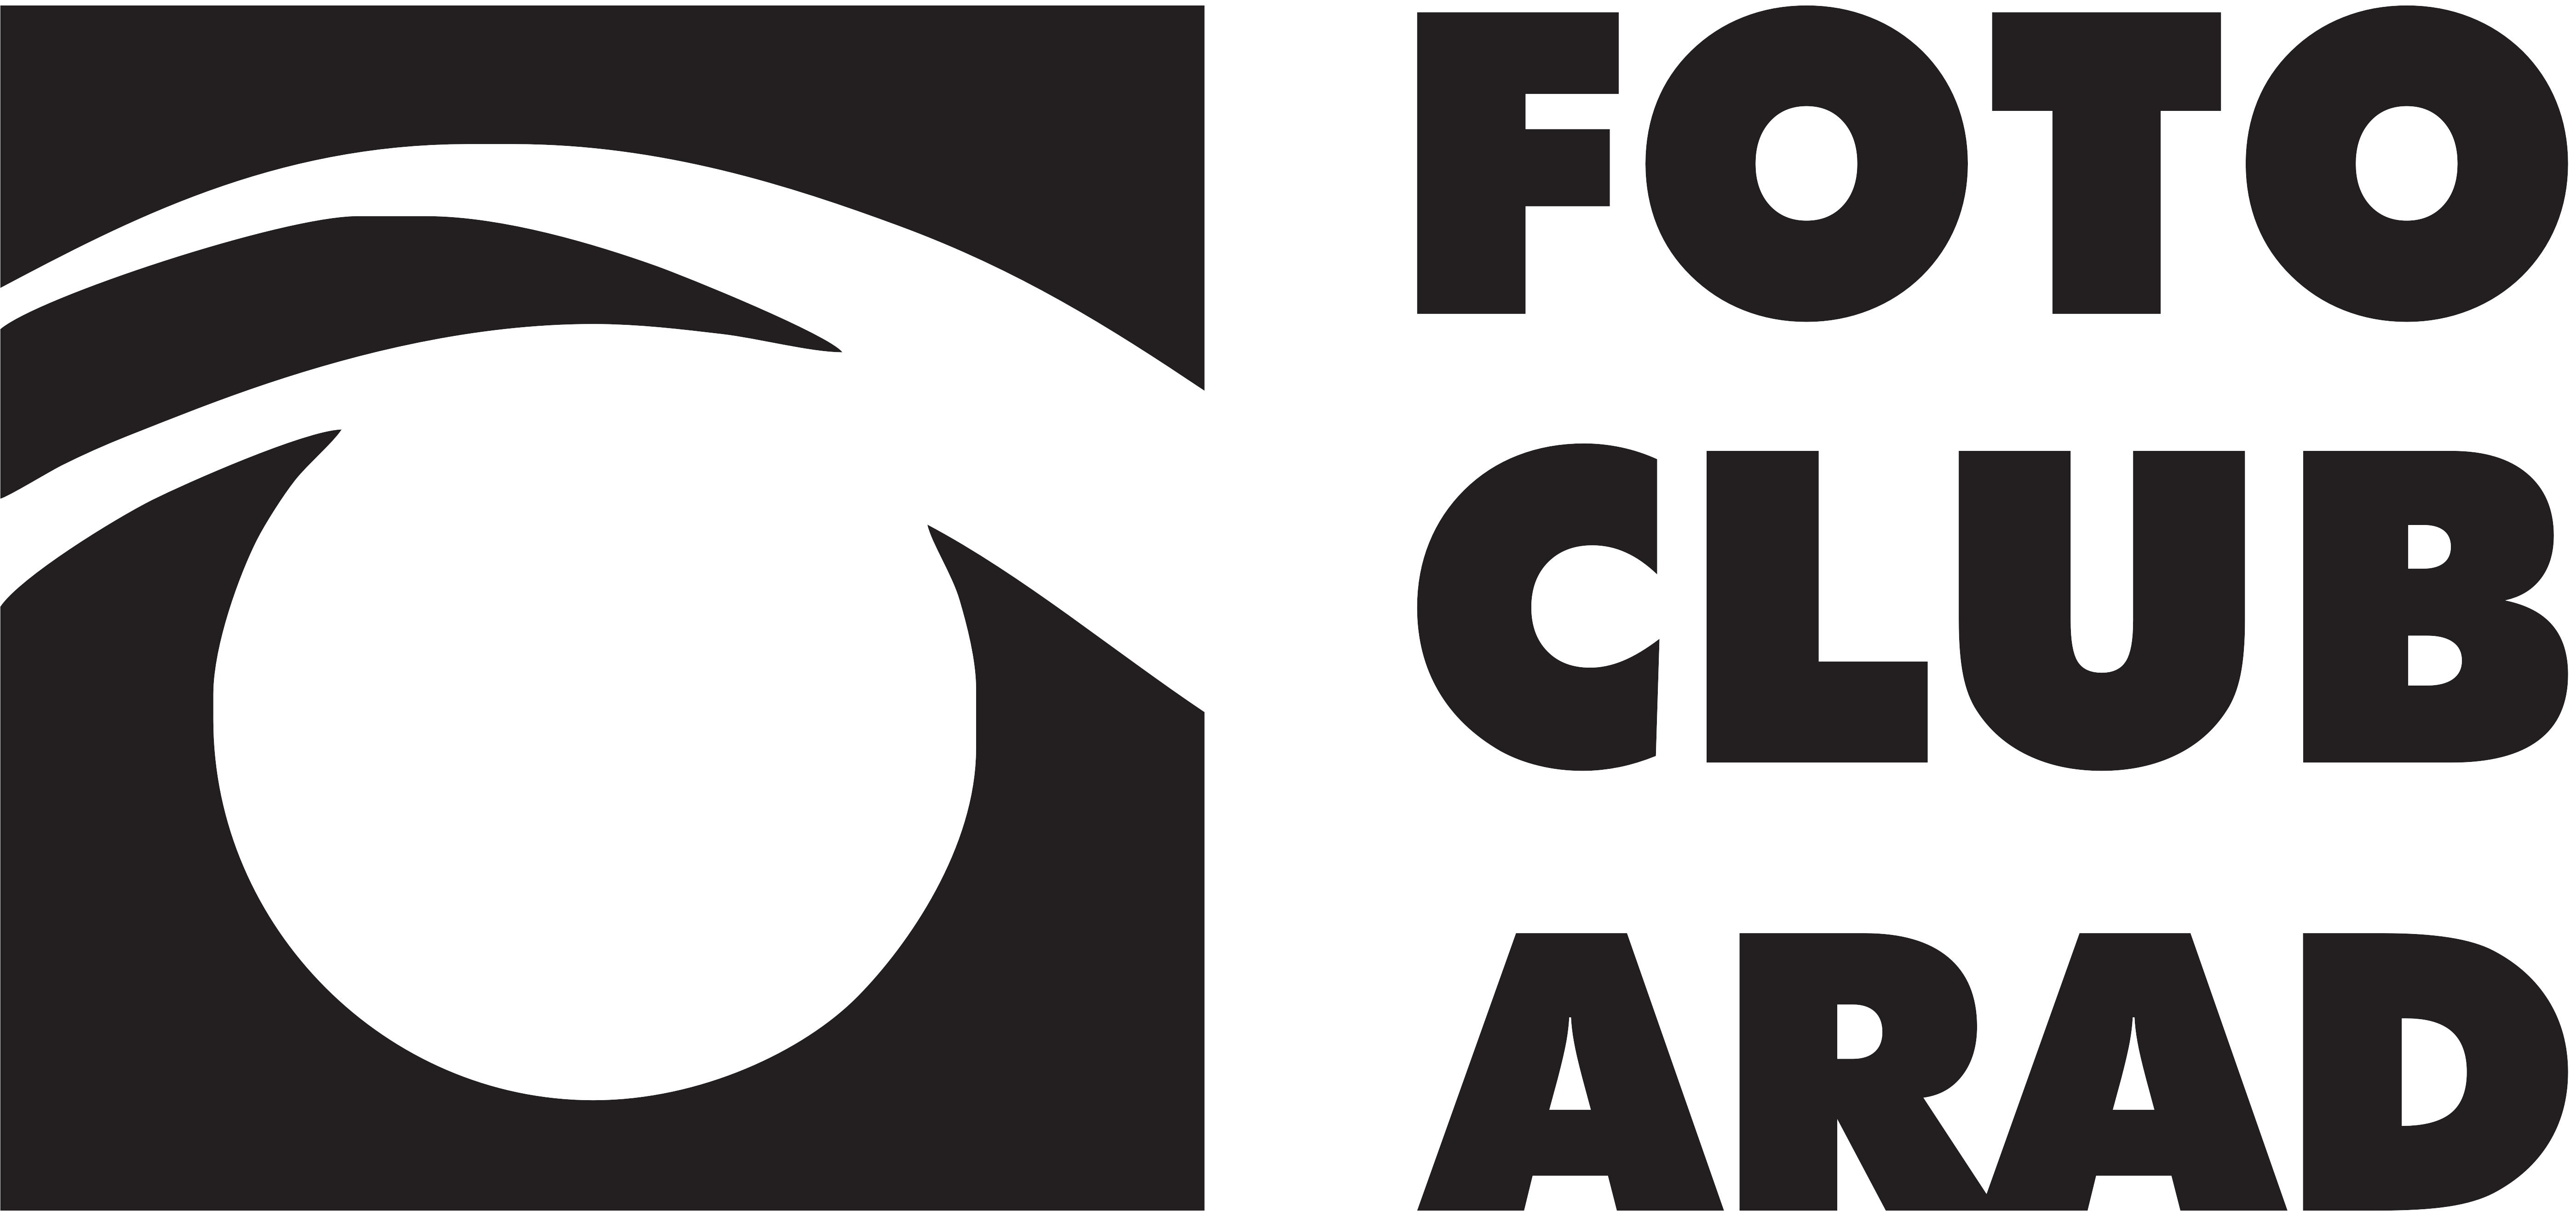 Foto Club Arad logo